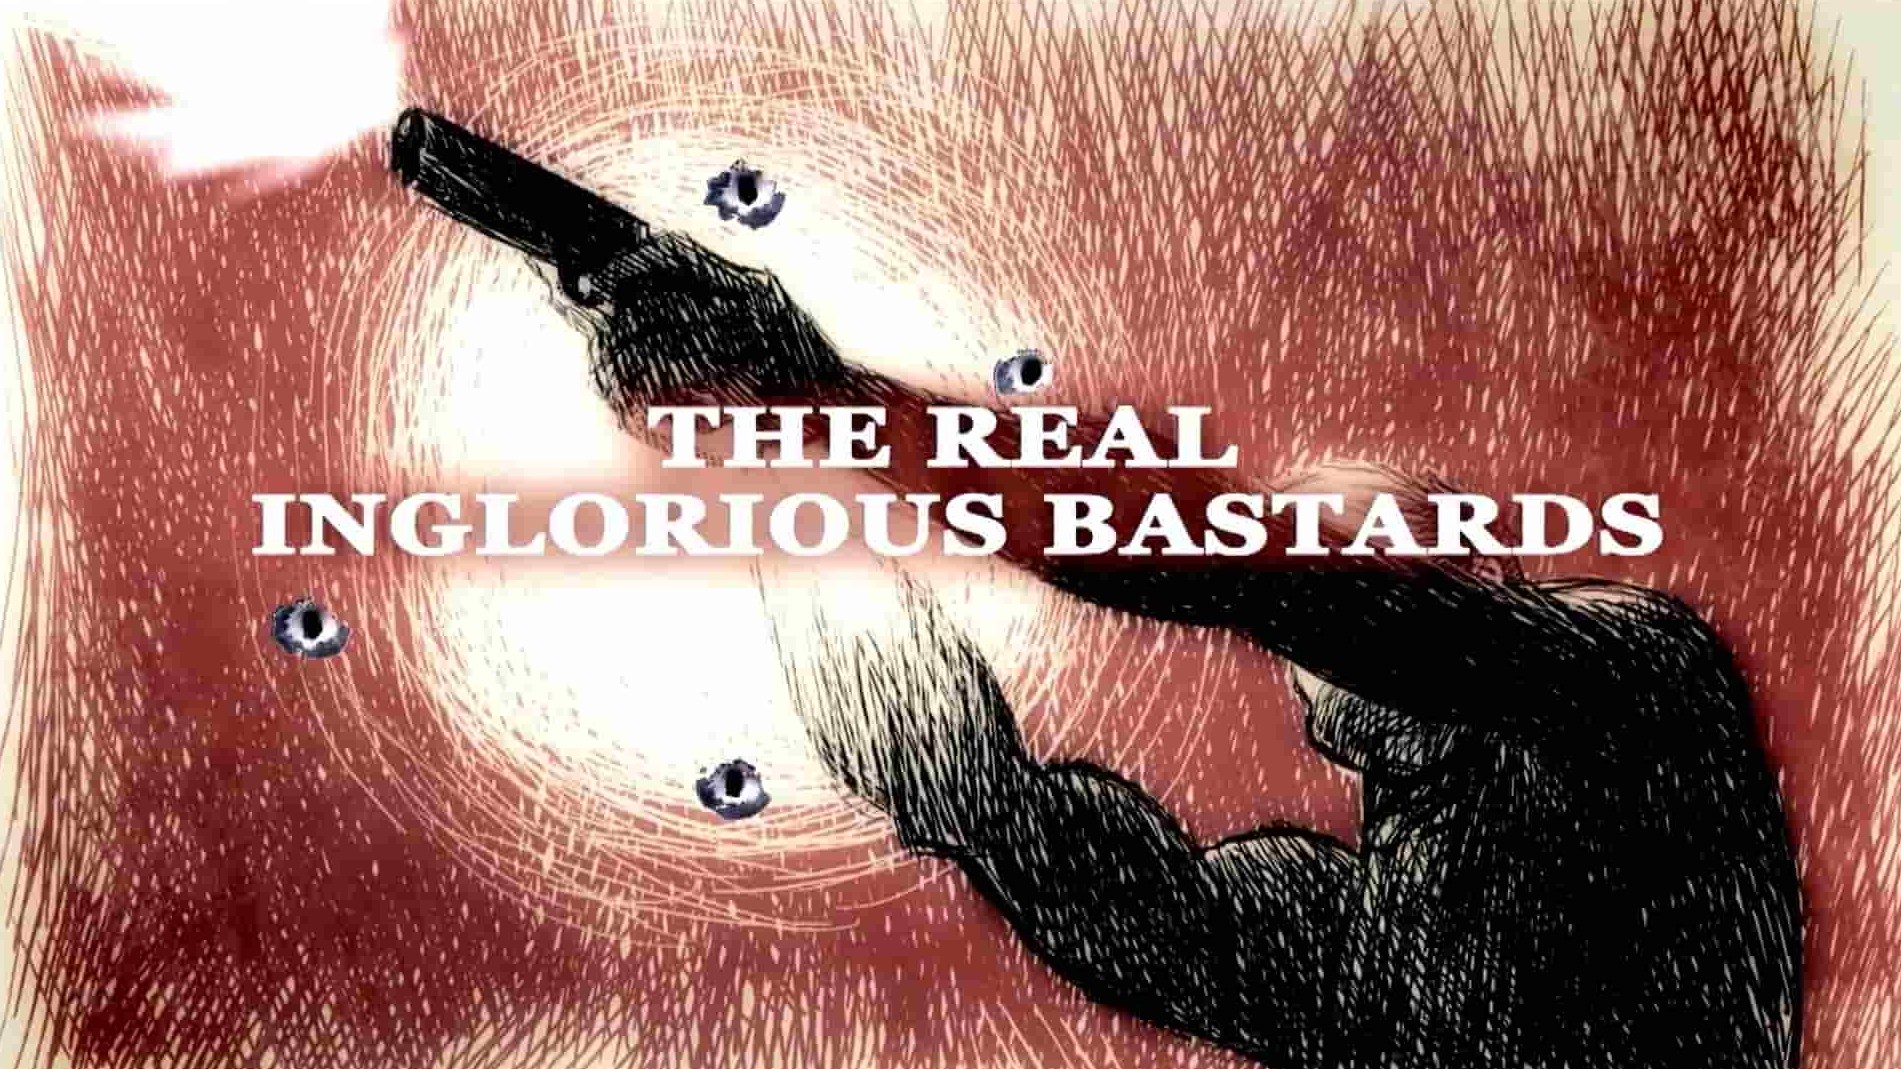  加拿大纪录片《无耻混蛋/真正的不光彩的混蛋 The Real Inglorious Bastards 2012》全1集 英语中英双字 1080P高清网盘下载